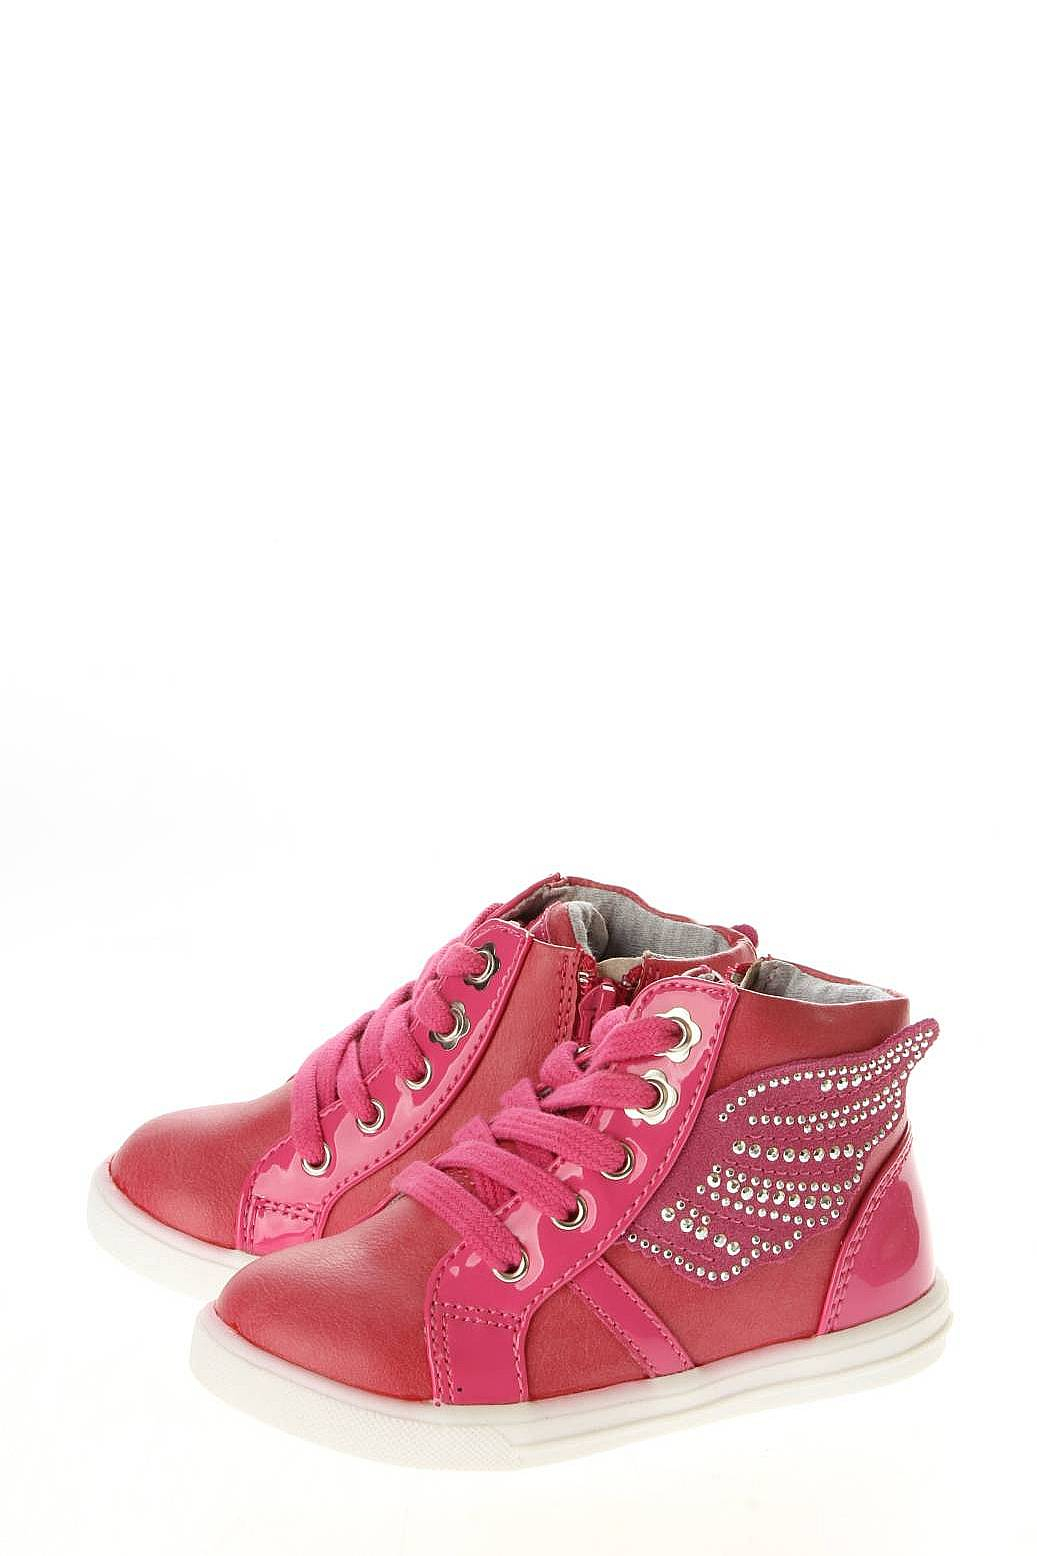 Ботинки KENKA розовые K1QKC_4750-019 купить в Екатеринбурге за 1290 руб